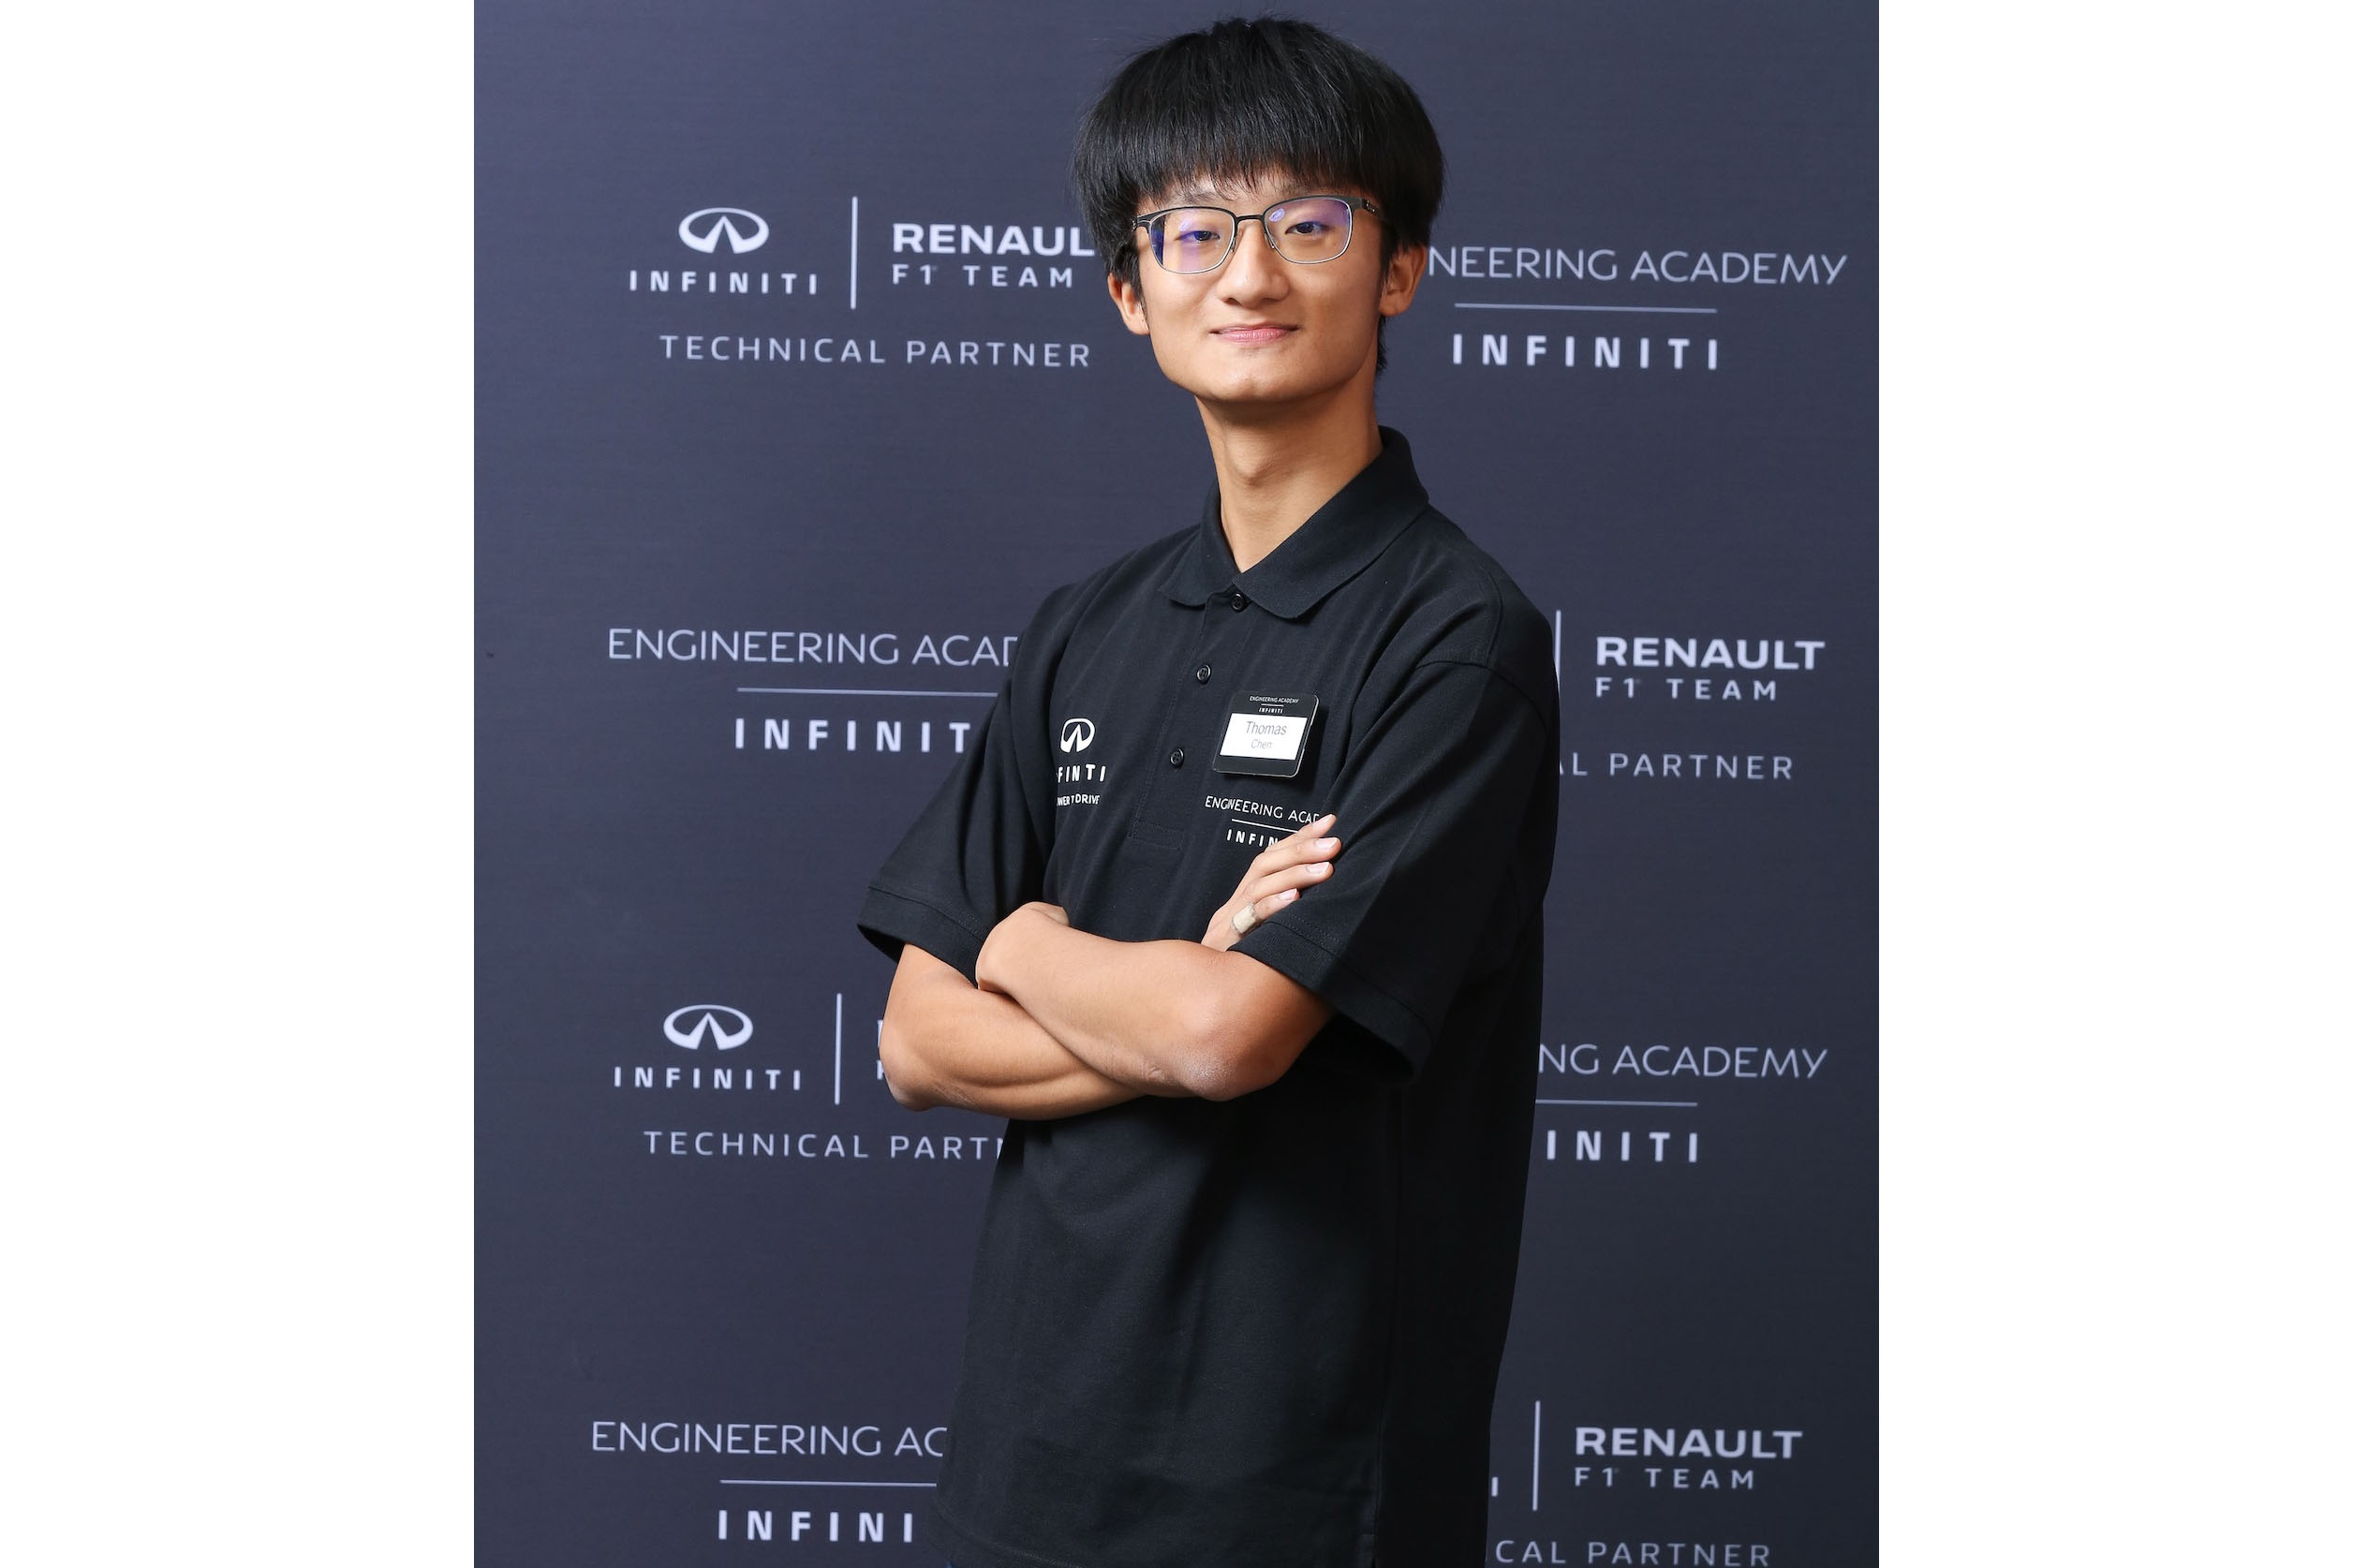 台灣清華大學動力機械工程學系三年級的 陳佐任同學榮獲本屆「Infiniti 賽車工程學院」亞洲及大洋洲區總決賽冠軍。